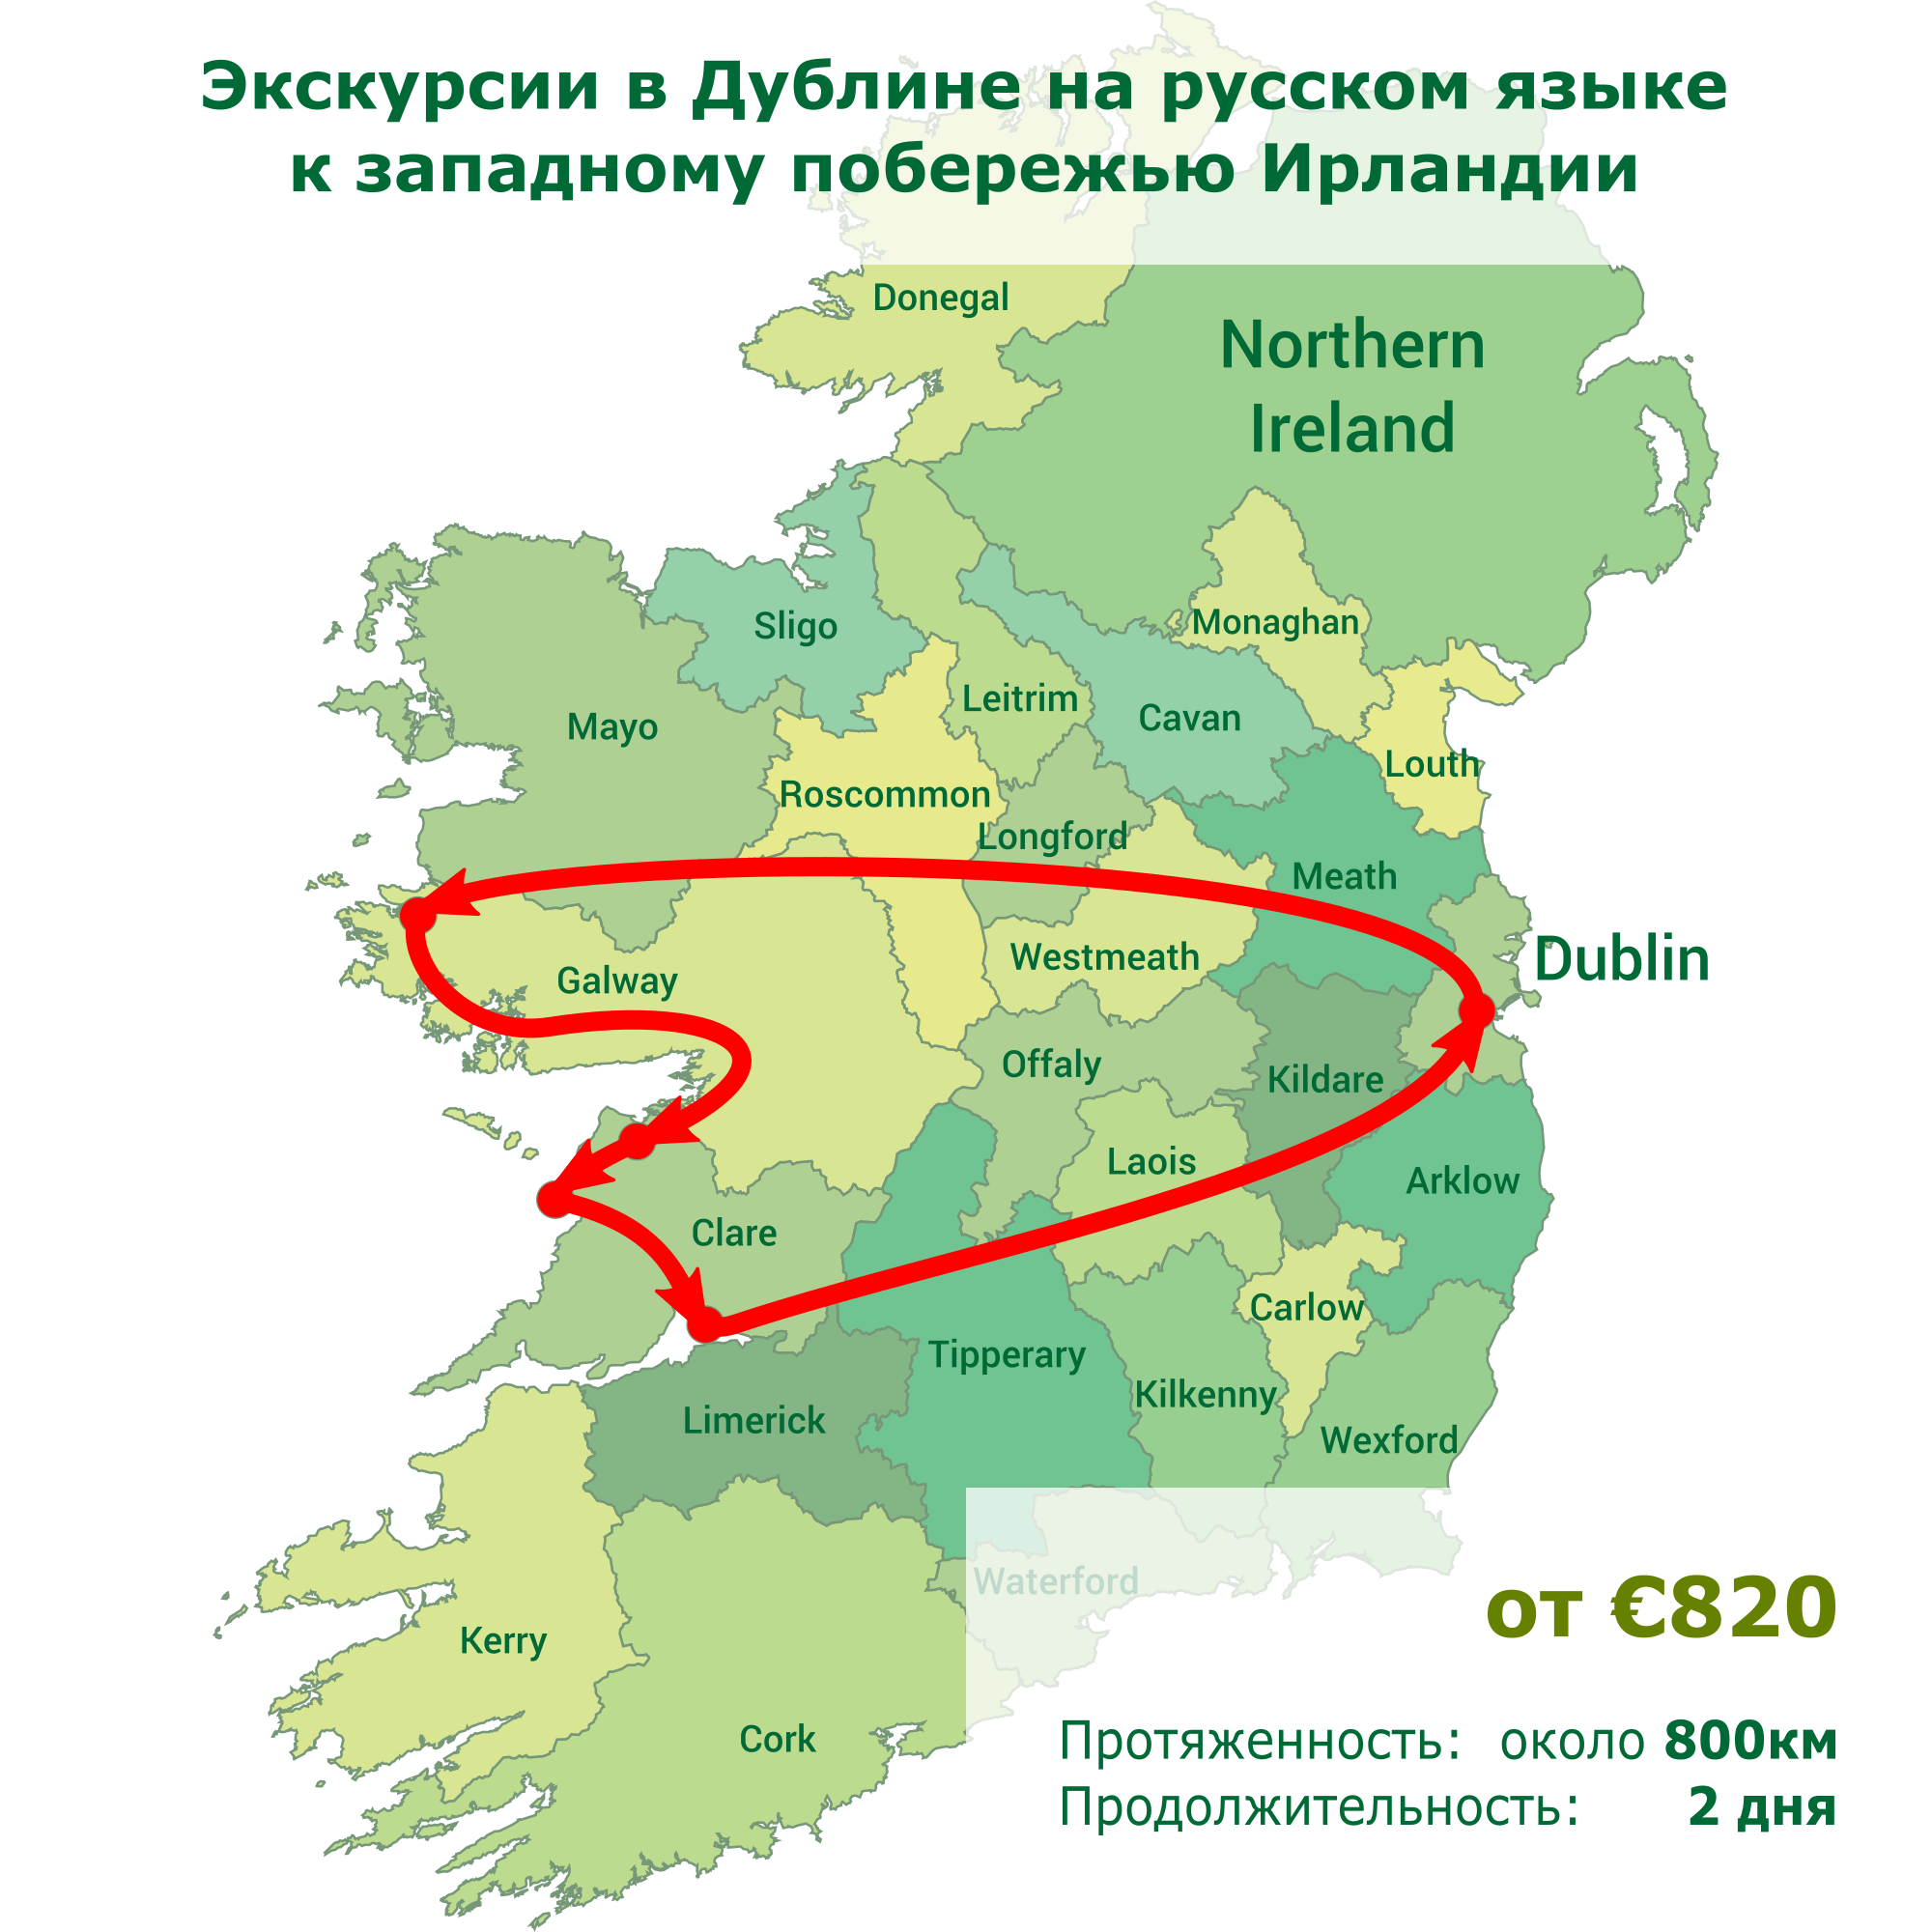 Экскурсии в Дублине на русском языке к западному побережью Ирландии